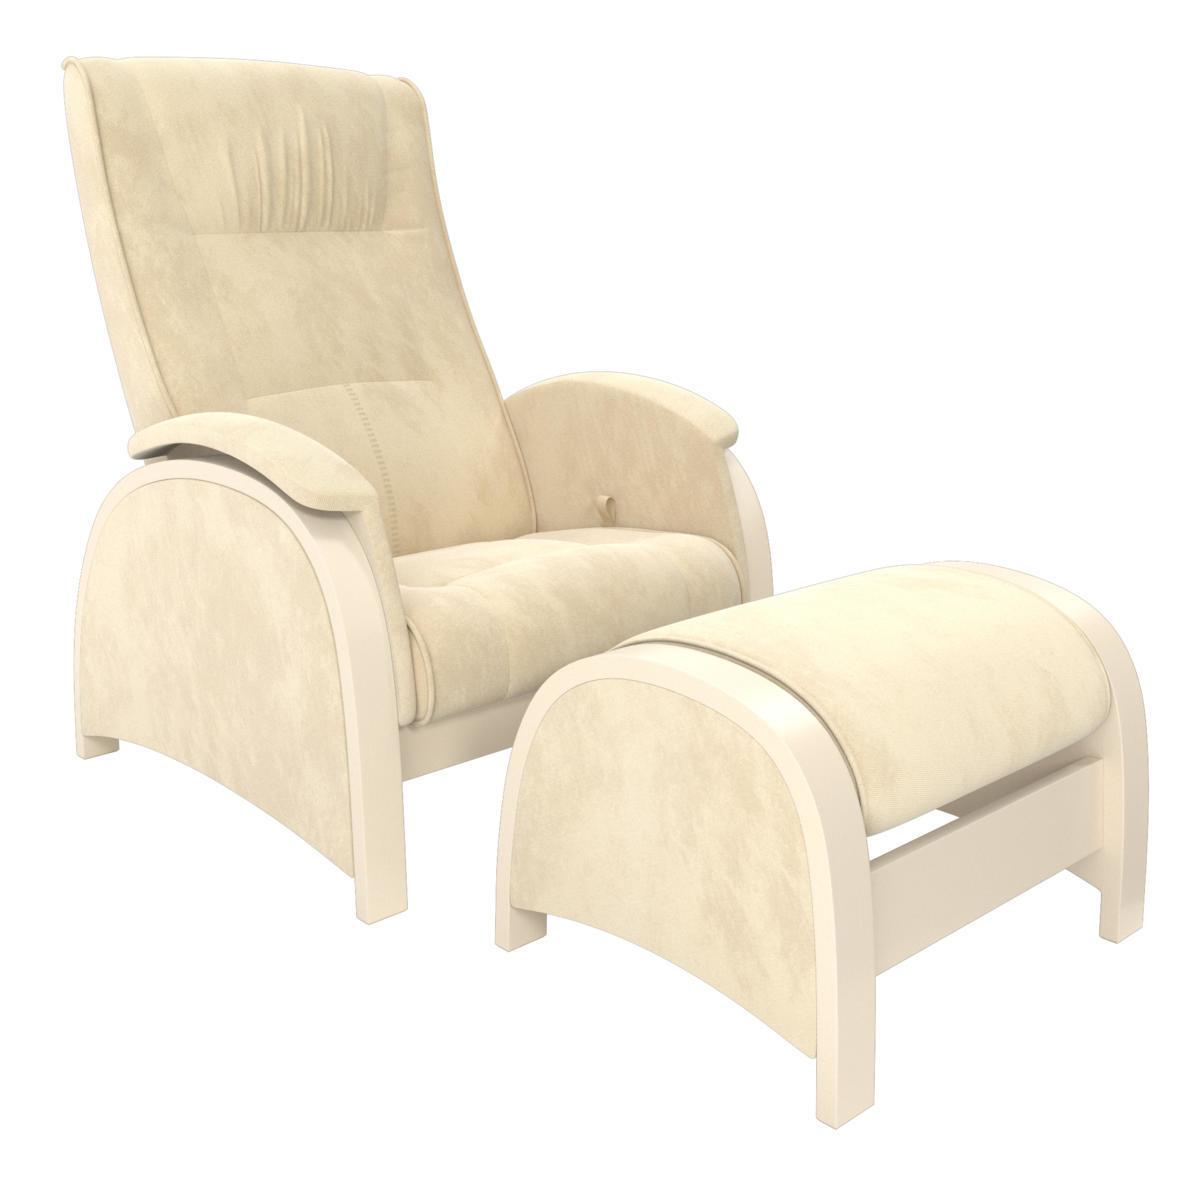 картинка Milli Fly кресло-глайдер для укачивания и кормления с пуфом магазин Мебель Легко